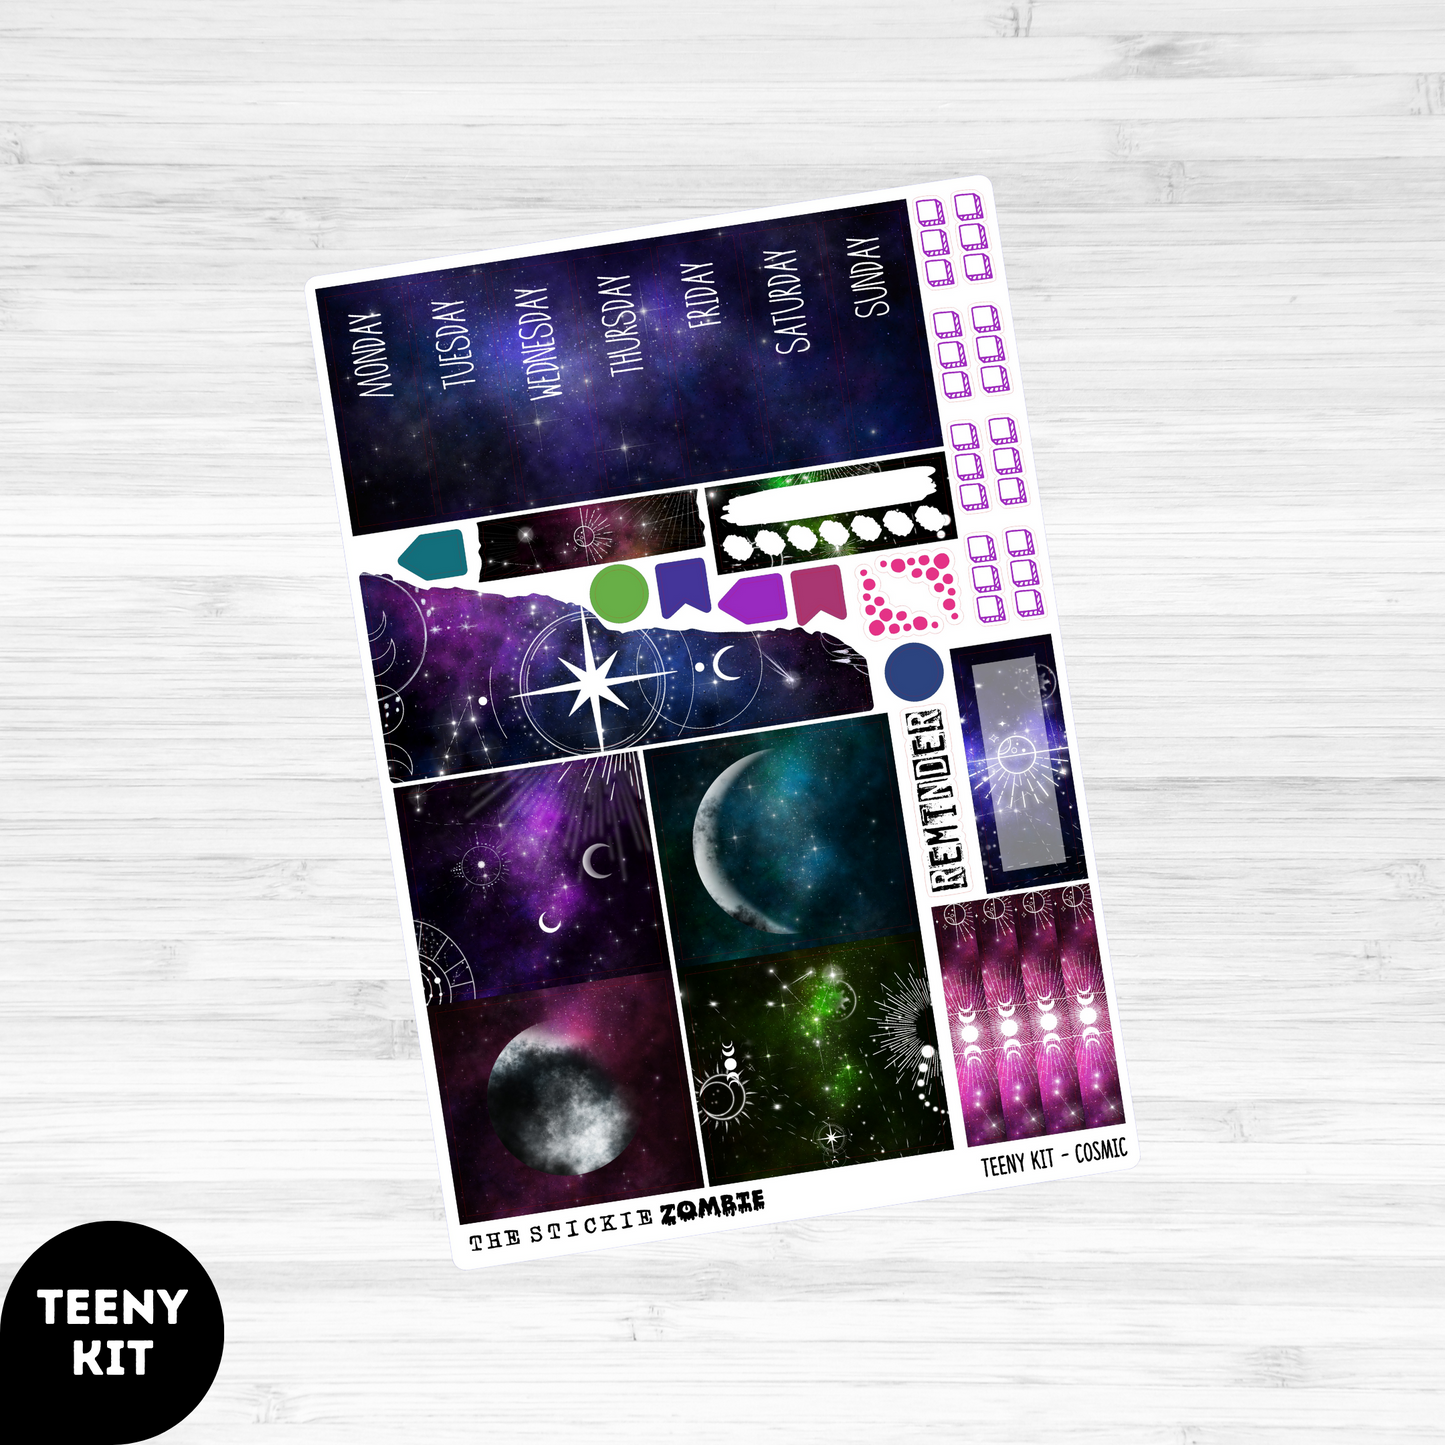 Teeny Vertical Kit / Cosmic